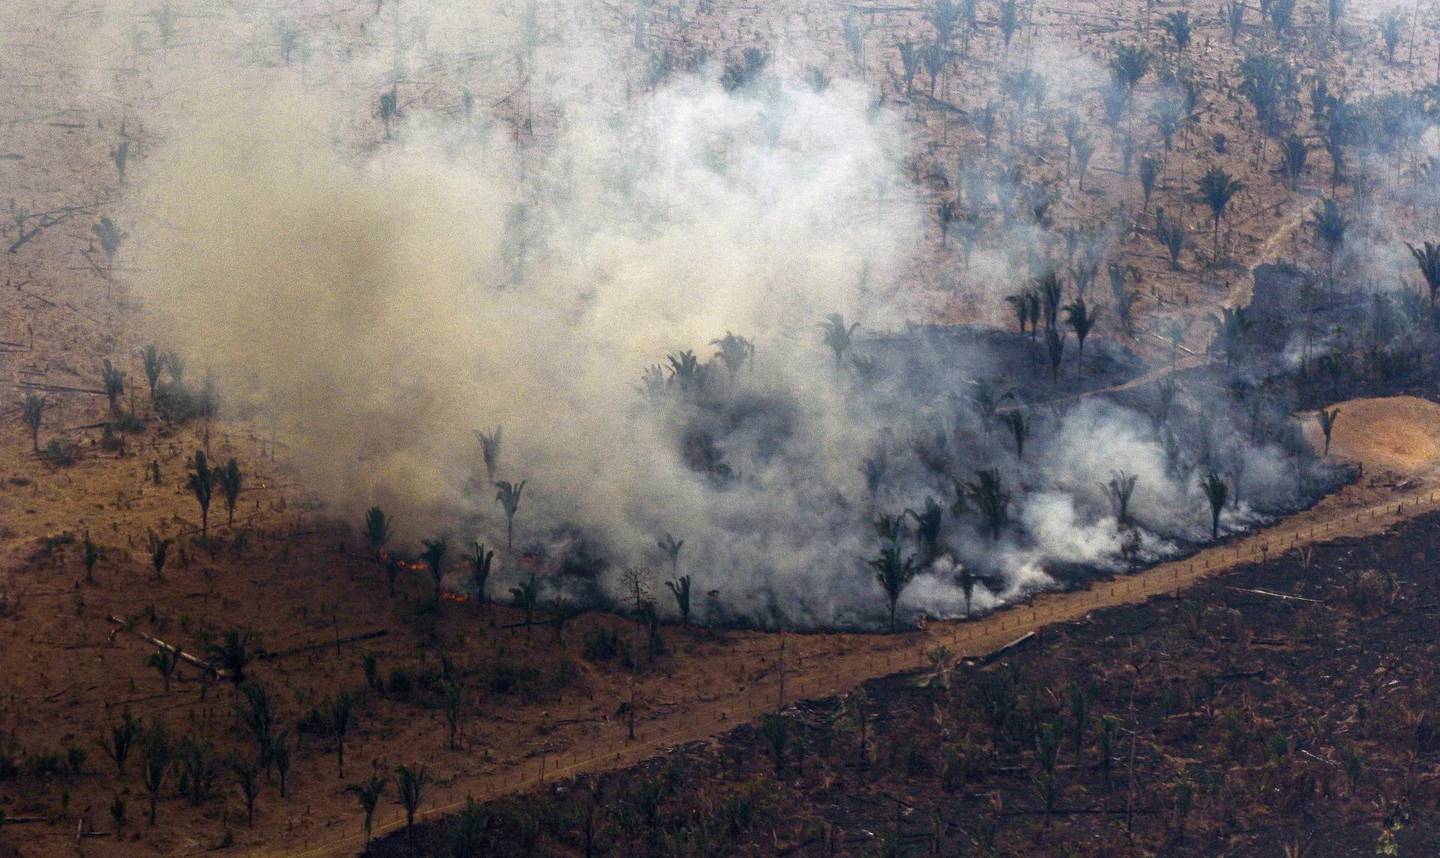 Amazonas: Avskogingen i Amazonas, verdens største regnskog, har økt kraftig etter at Bolsonaro ble president i Brasil.